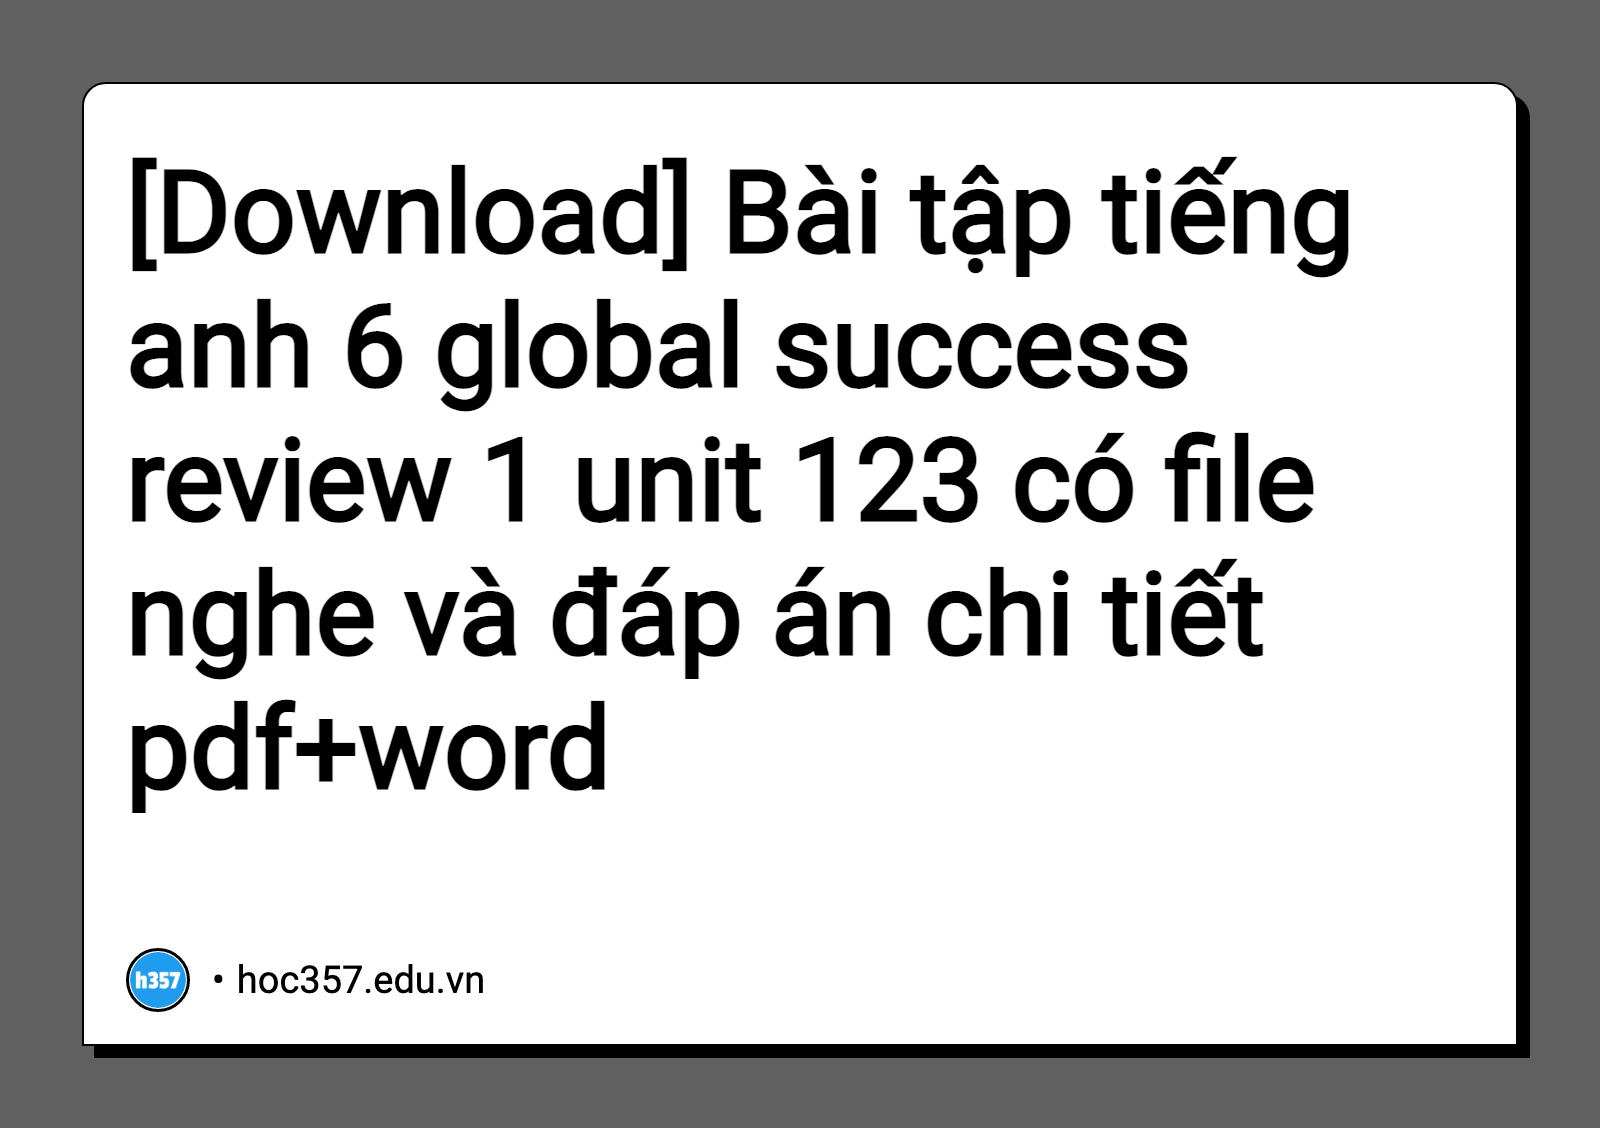 Hình minh họa Bài tập tiếng anh 6 global success review 1 unit 123 có file nghe và đáp án chi tiết